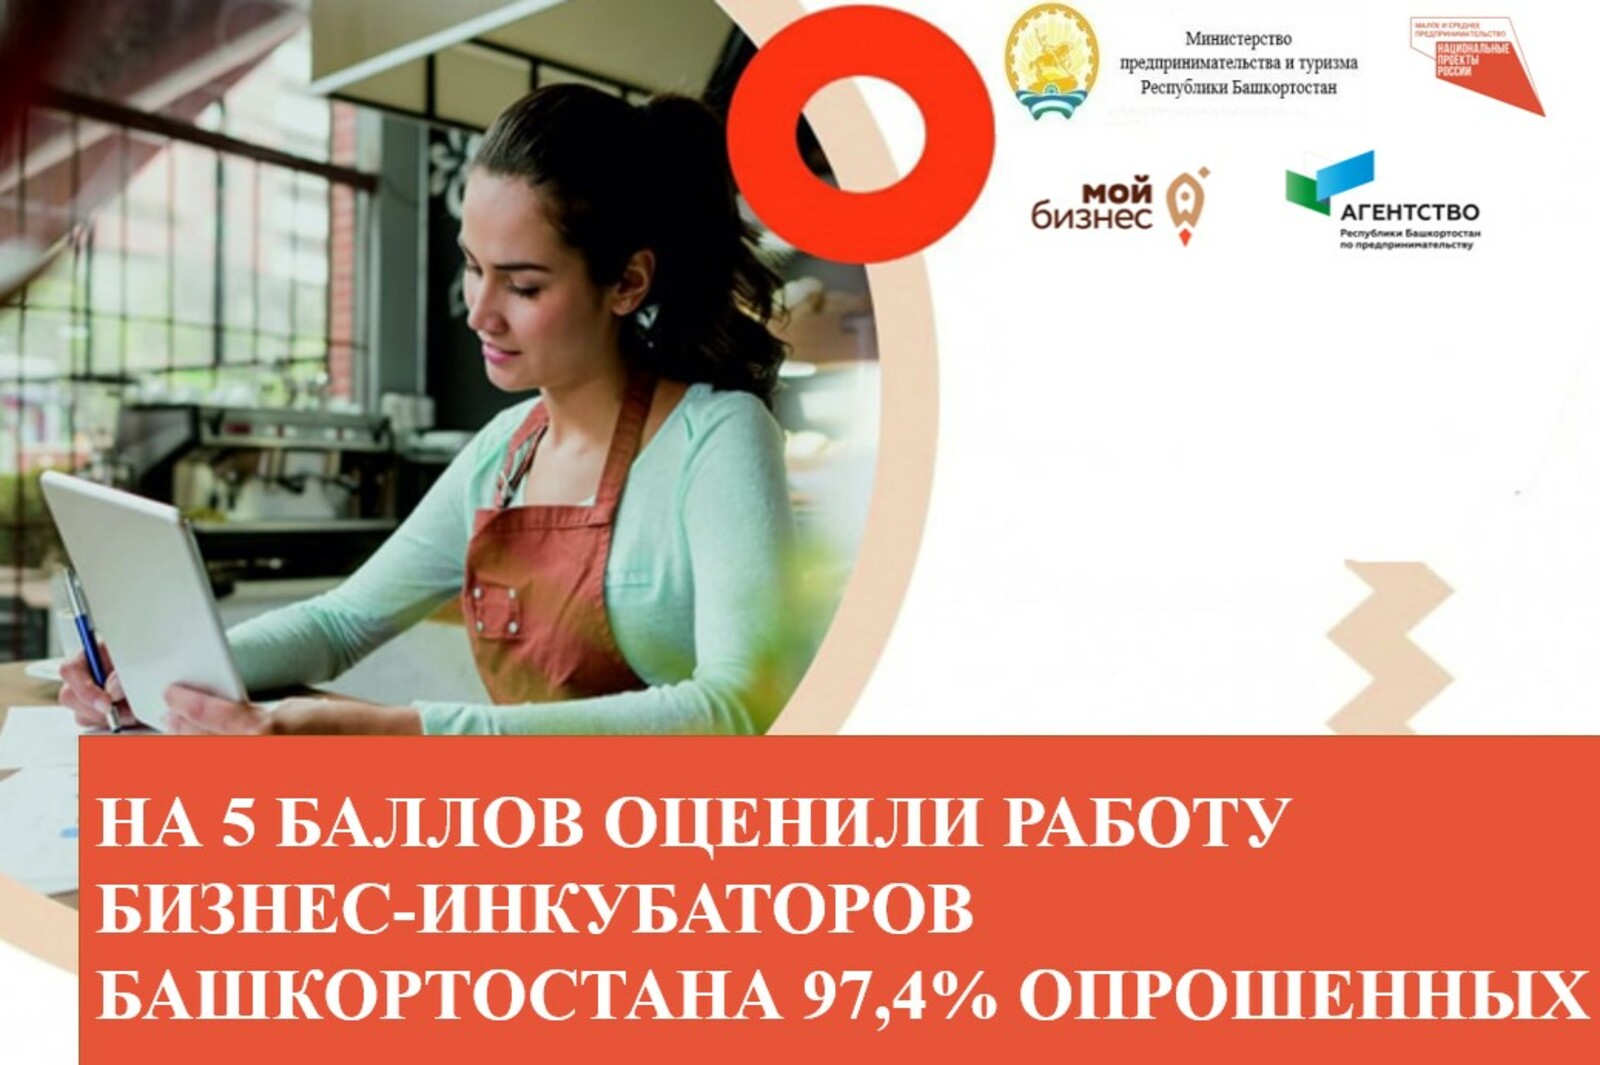 На 5 баллов оценили работу бизнес-инкубаторов Башкортостана 97,4% опрошенных